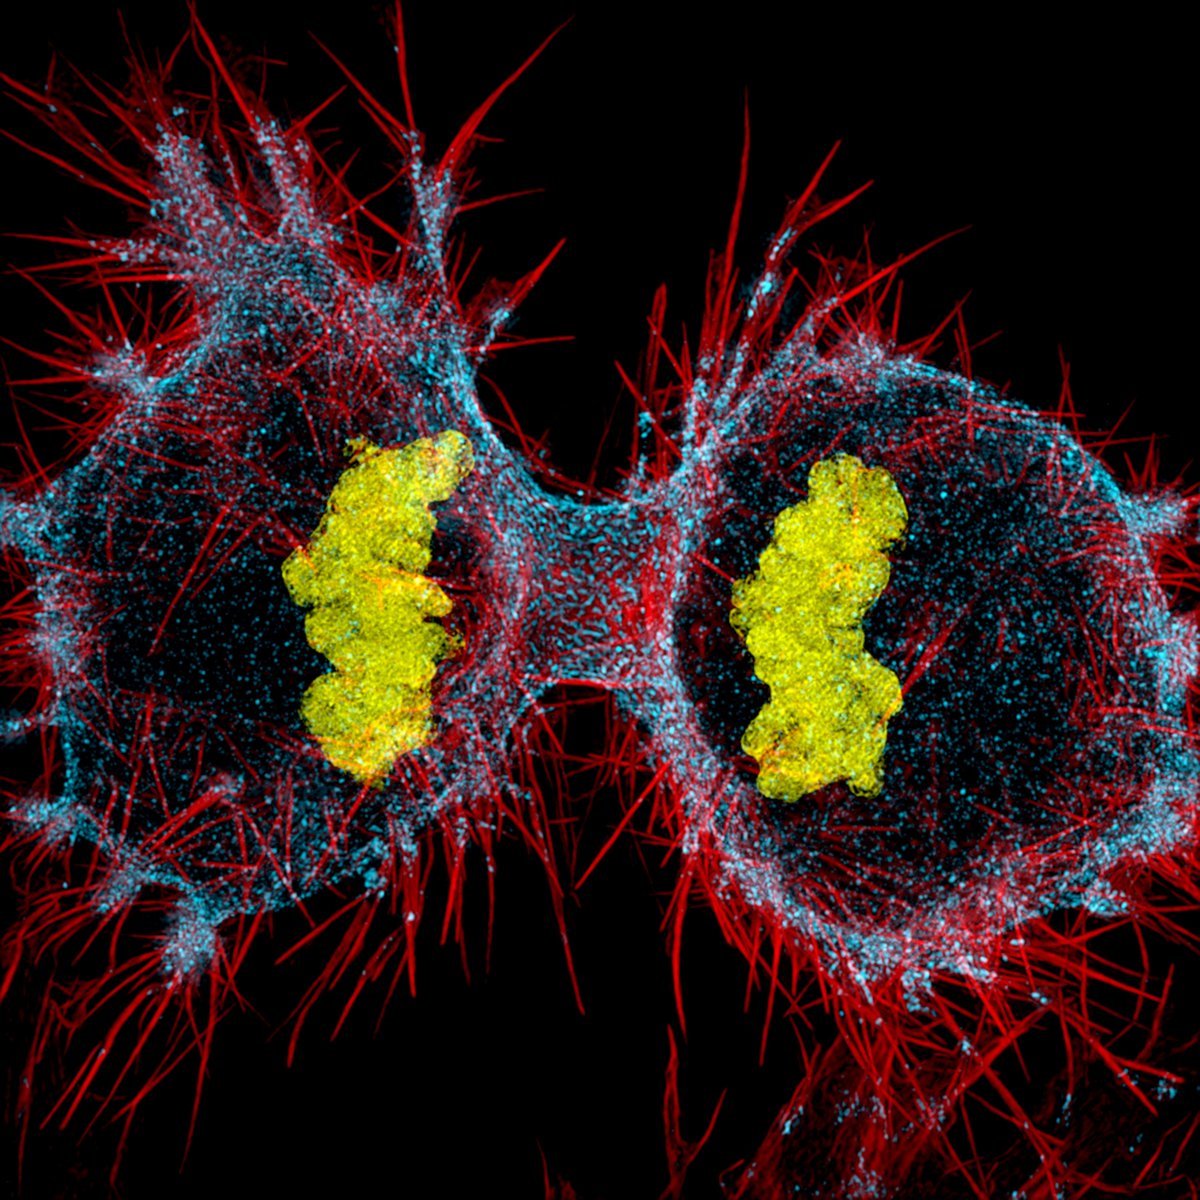 človeška hela-celica v postopku delitve celic